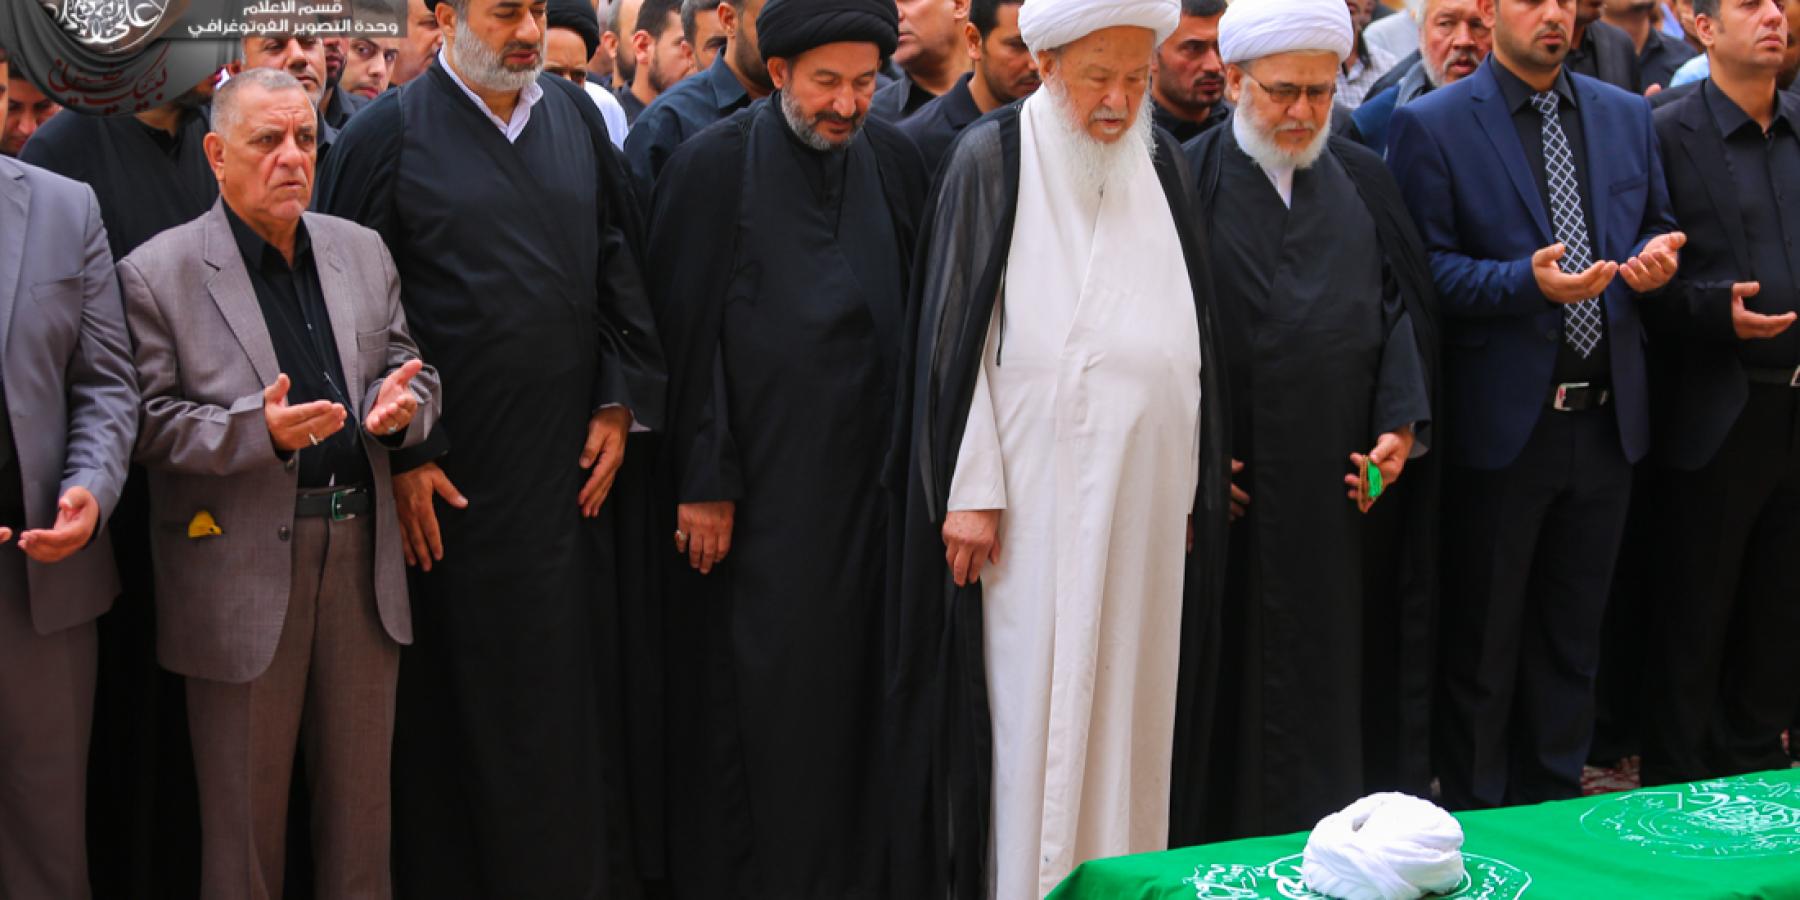   الأمانة العامة للعتبة العلوية المقدسة تقيم مراسم التشييع والصلاة على جنازة العلامة الشيخ علي الفضلي